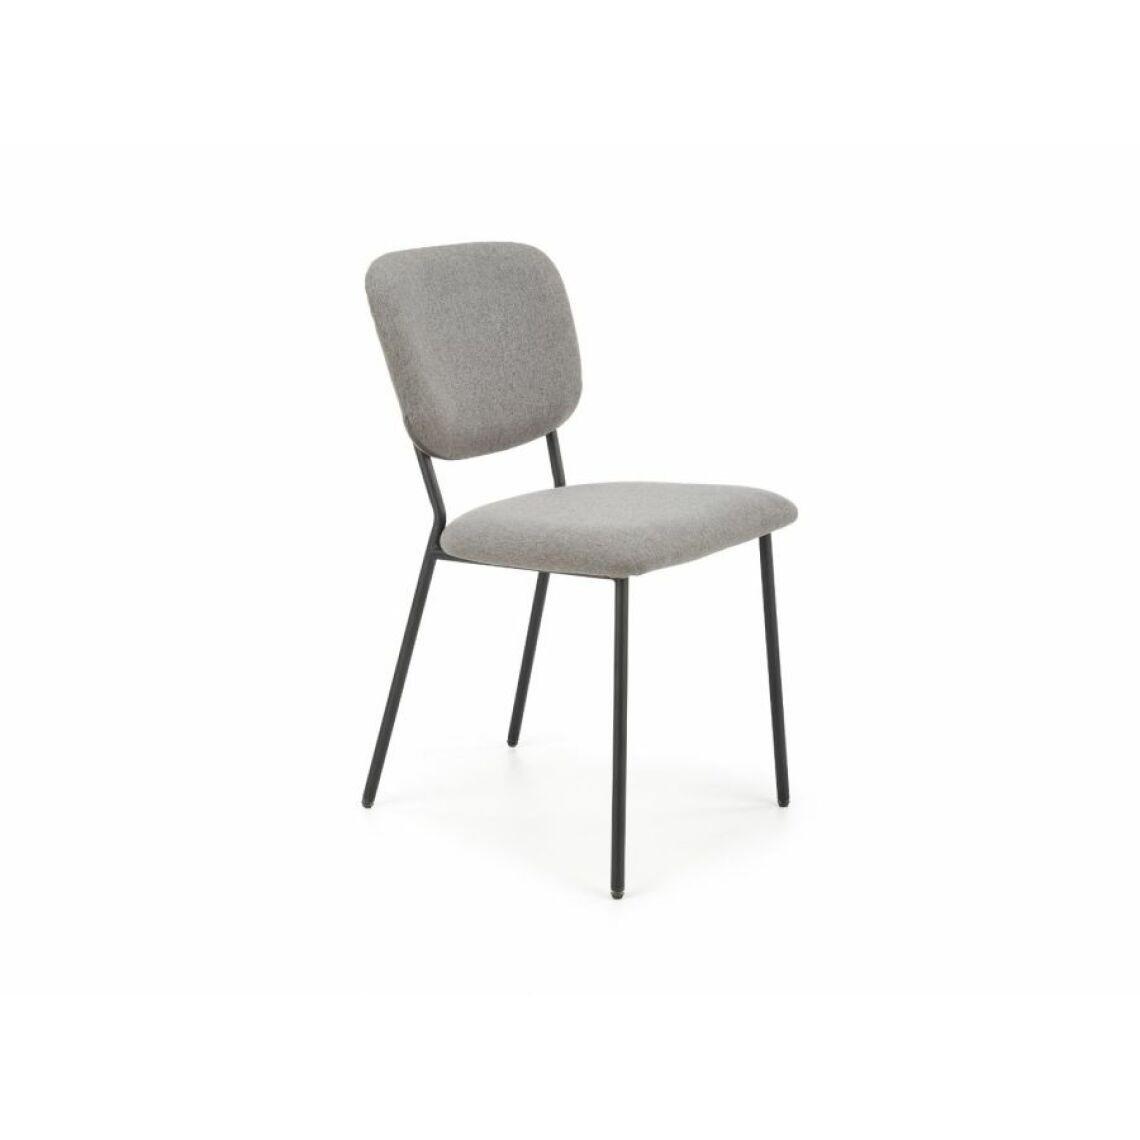 Hucoco - KITYSE - Chaise style loft salon/salle à manger - 85x56x47 cm - Gris - Chaises